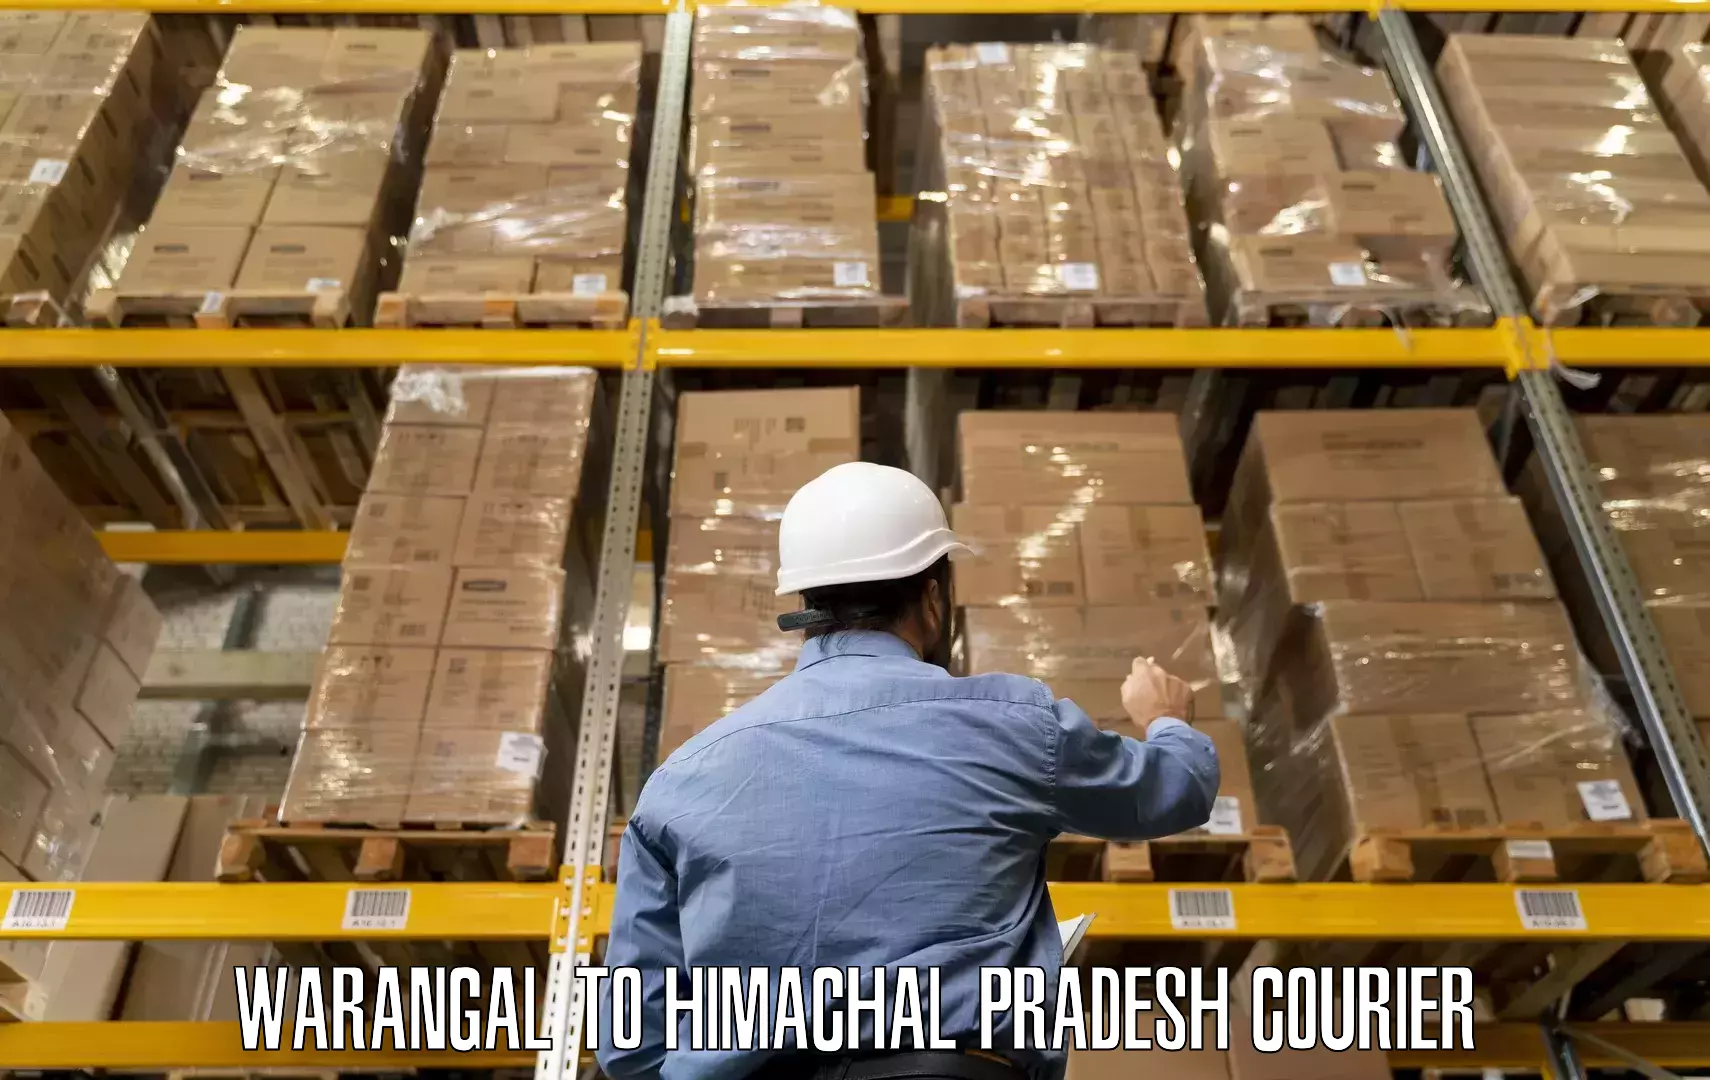 Furniture transport experts Warangal to Jaisinghpur